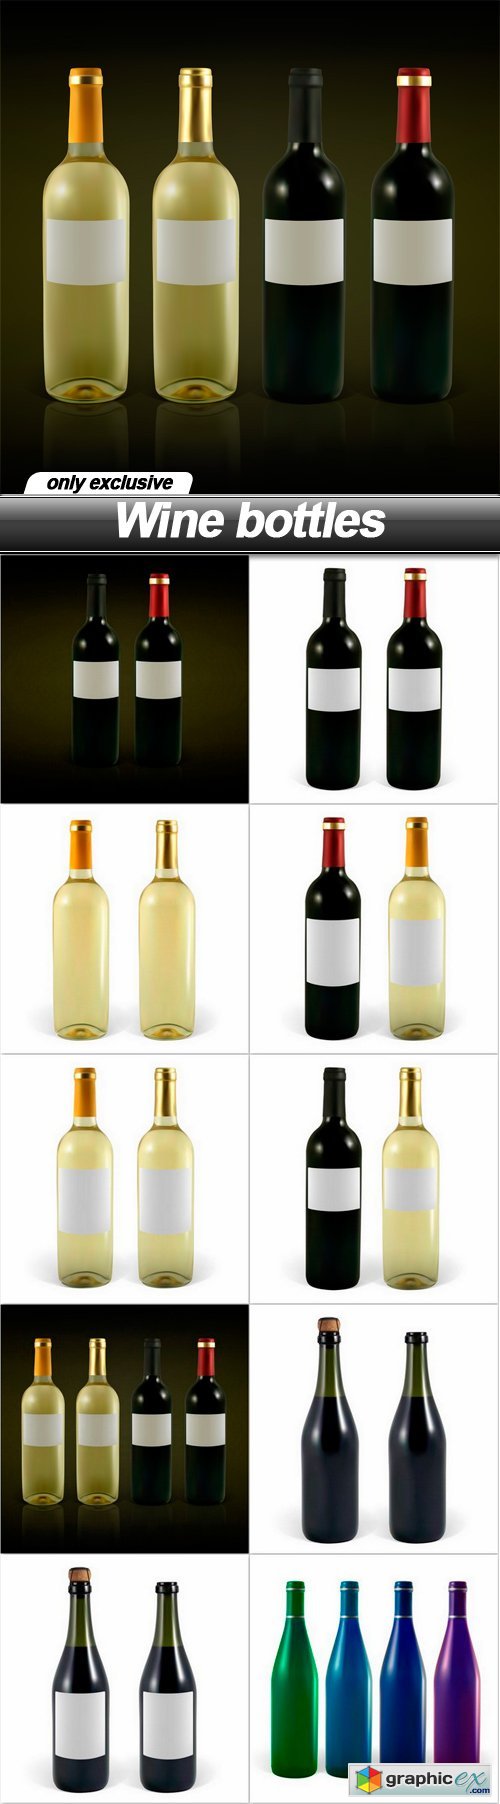 Wine bottles - 10 EPS